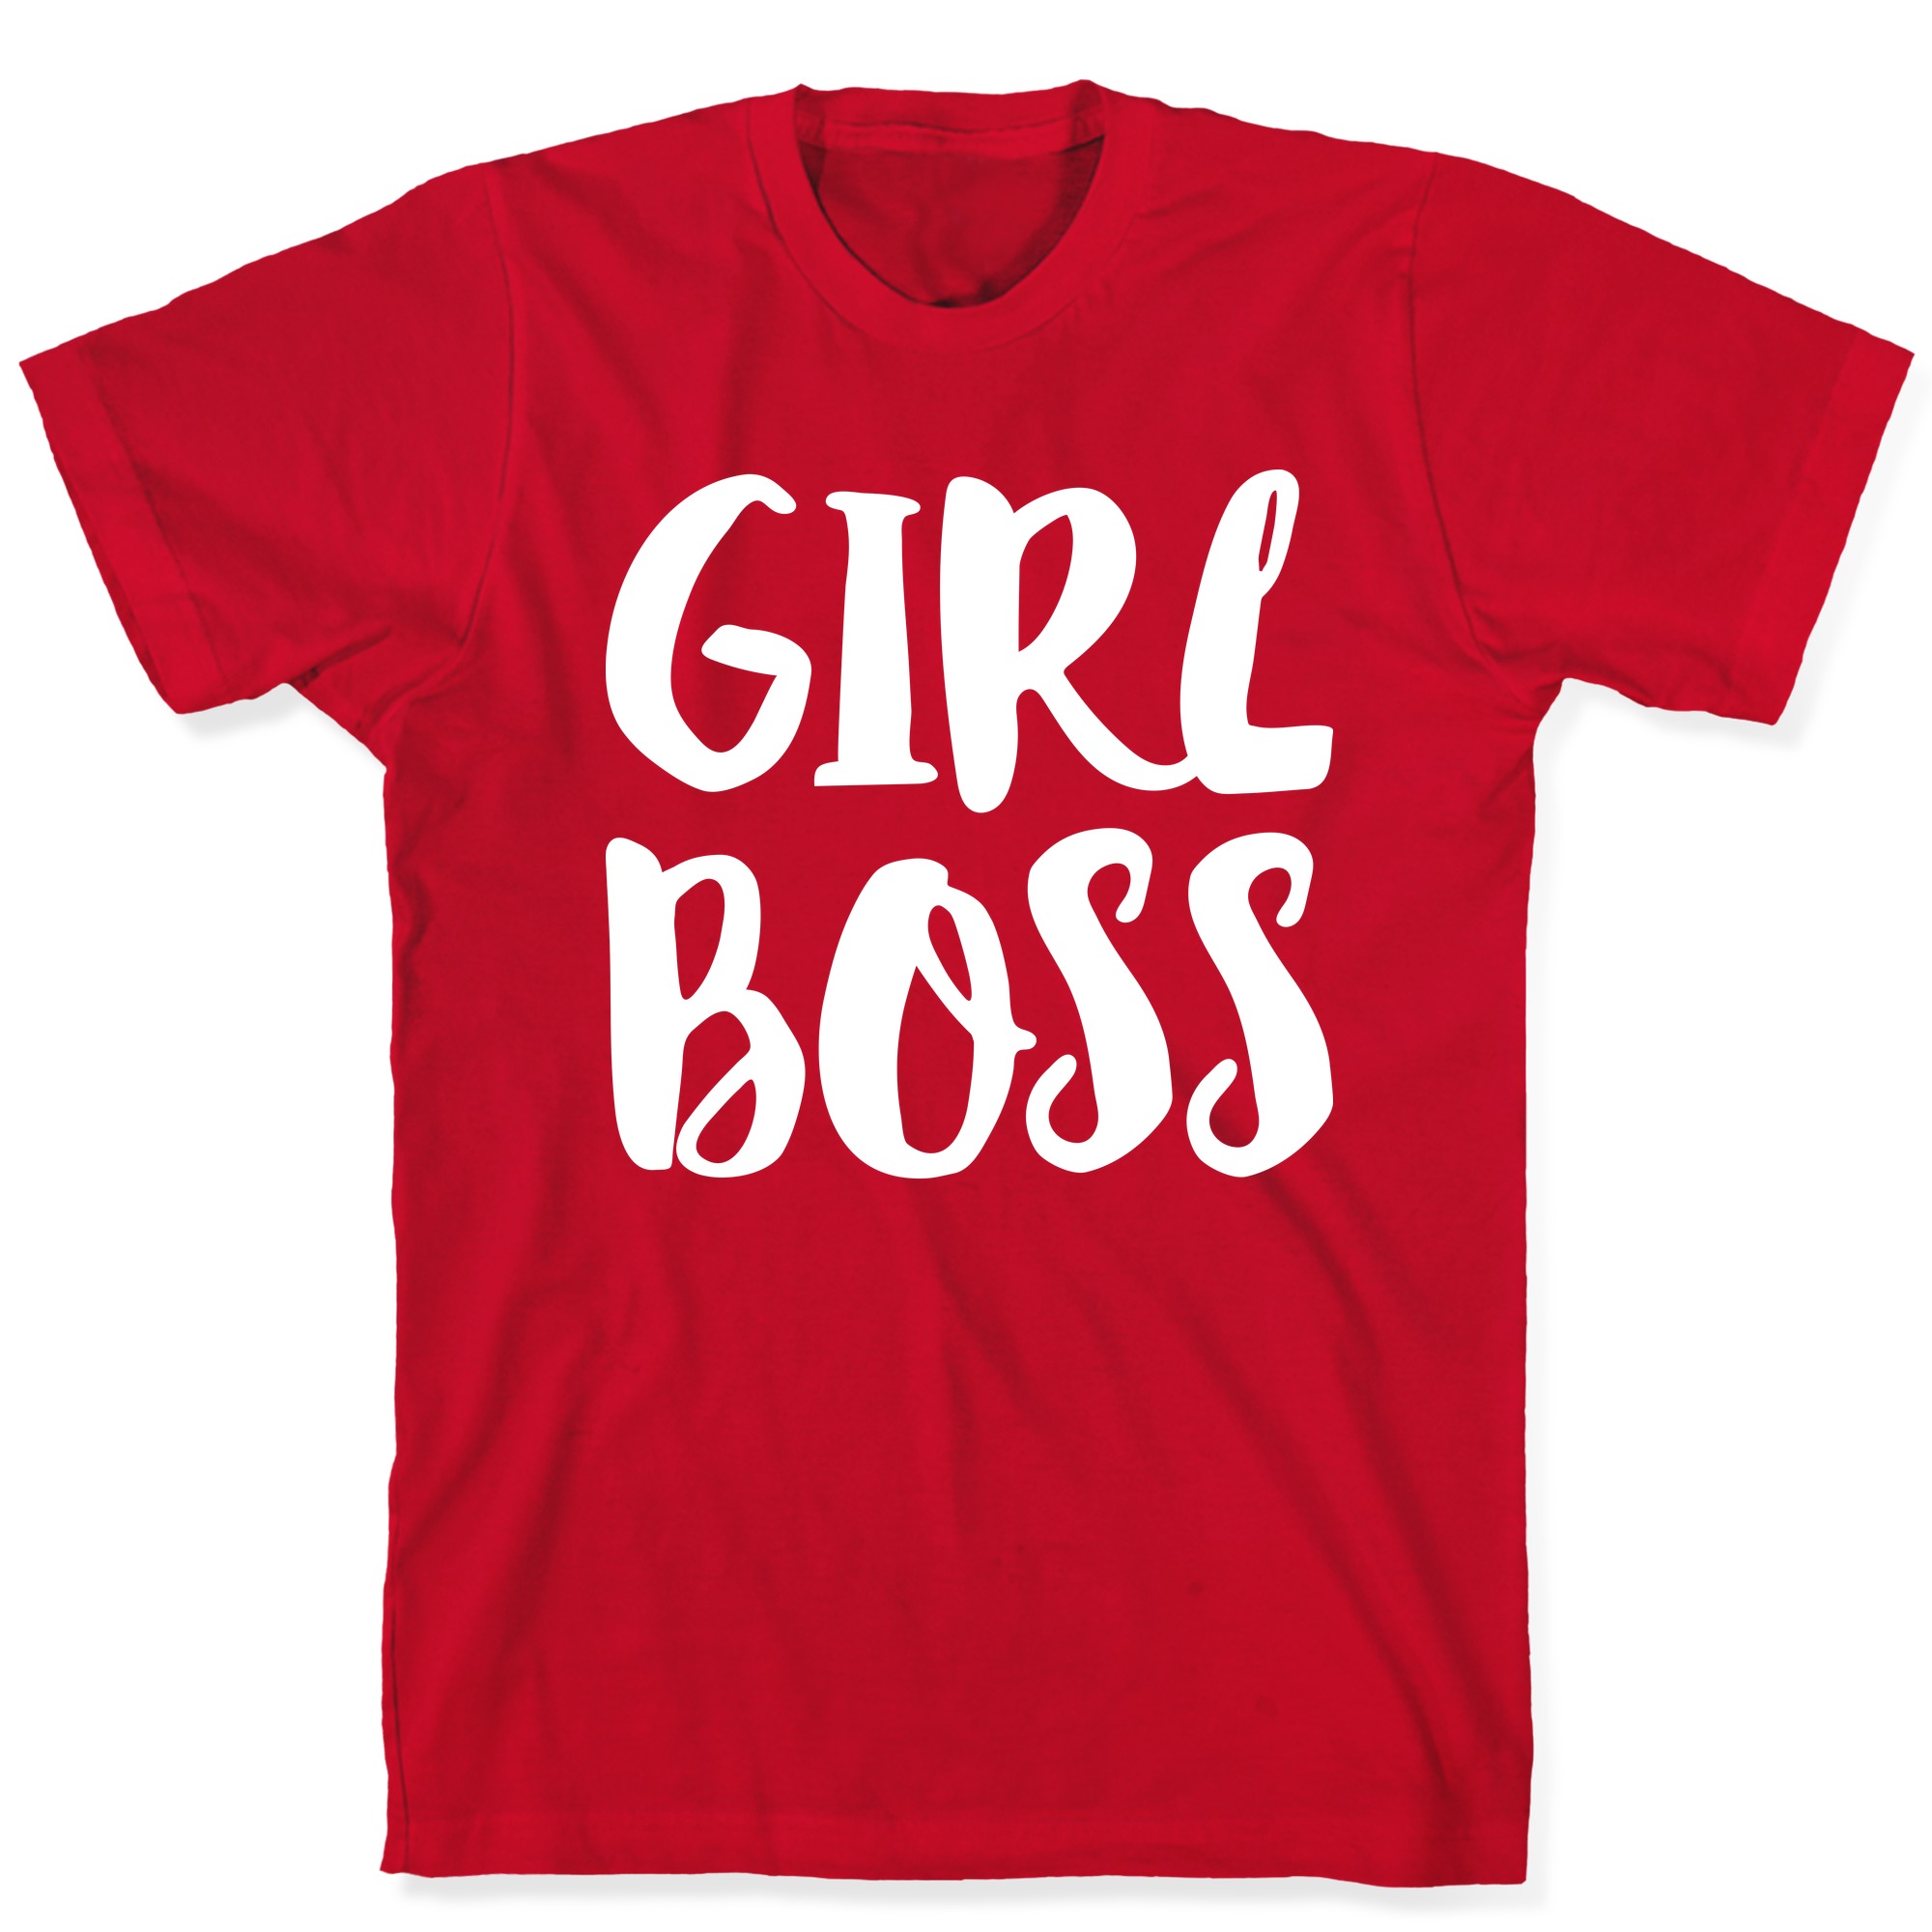 girlboss t shirt